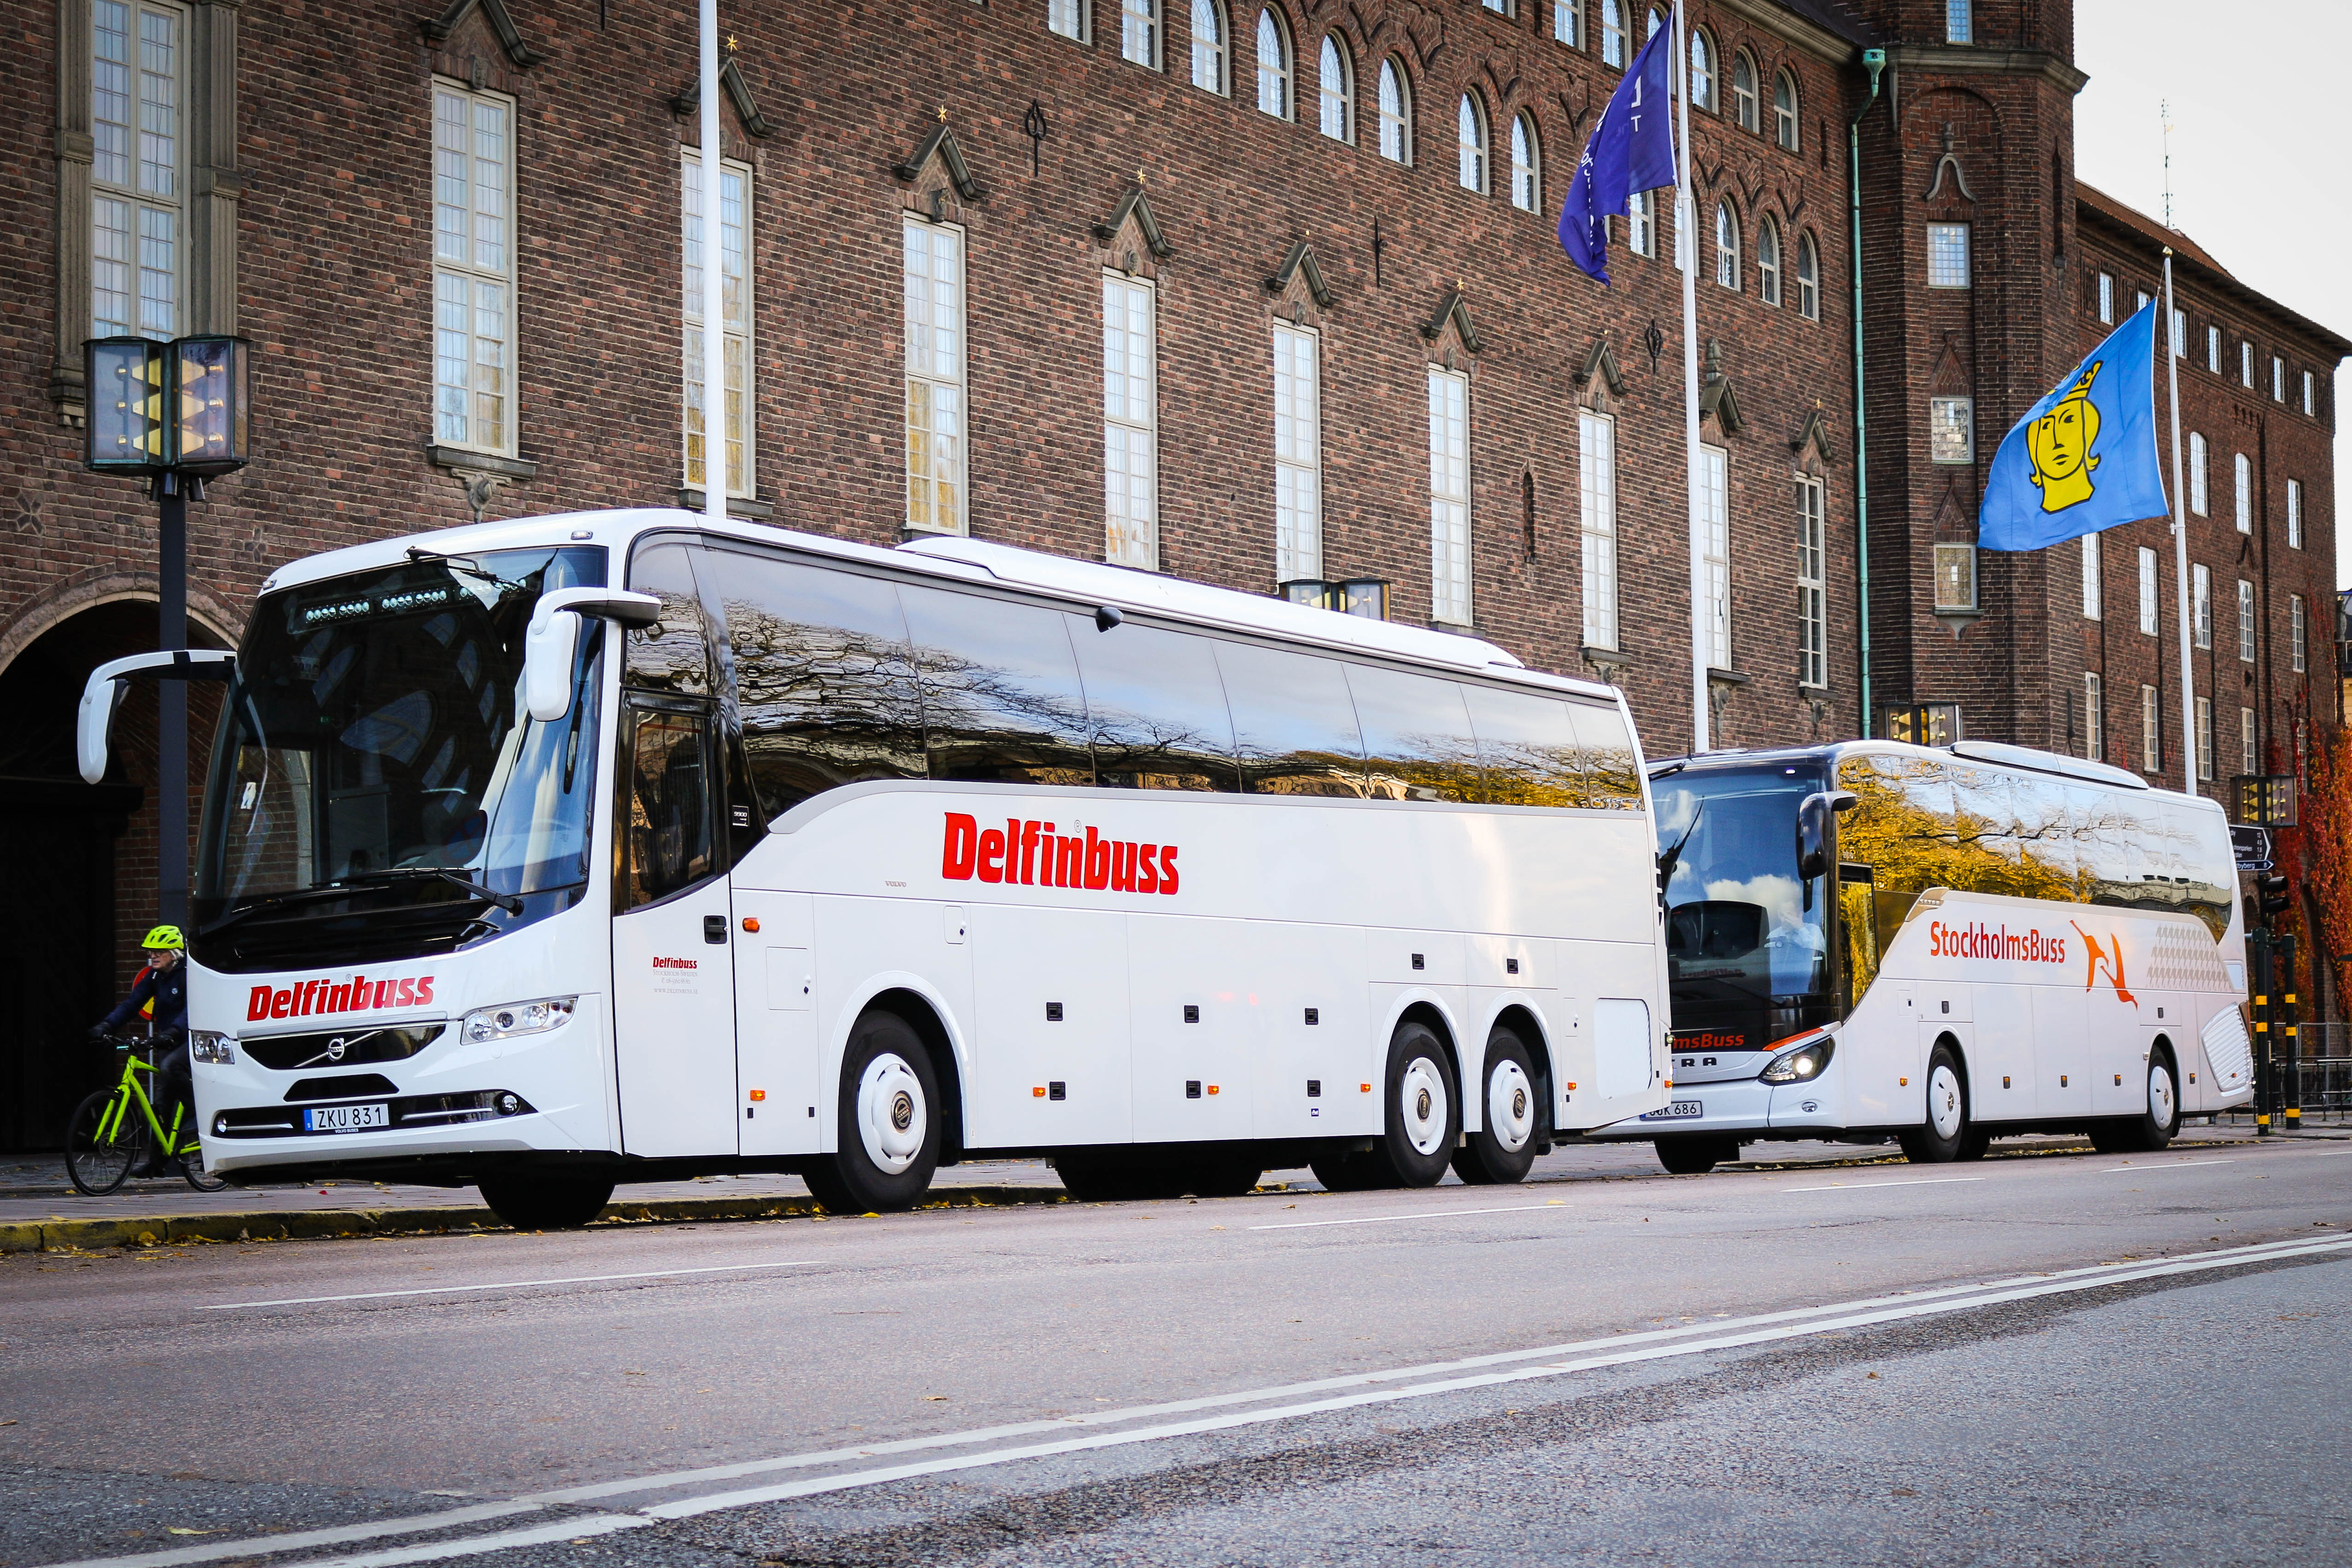 Stockholmsbuss & Delfinbuss became one